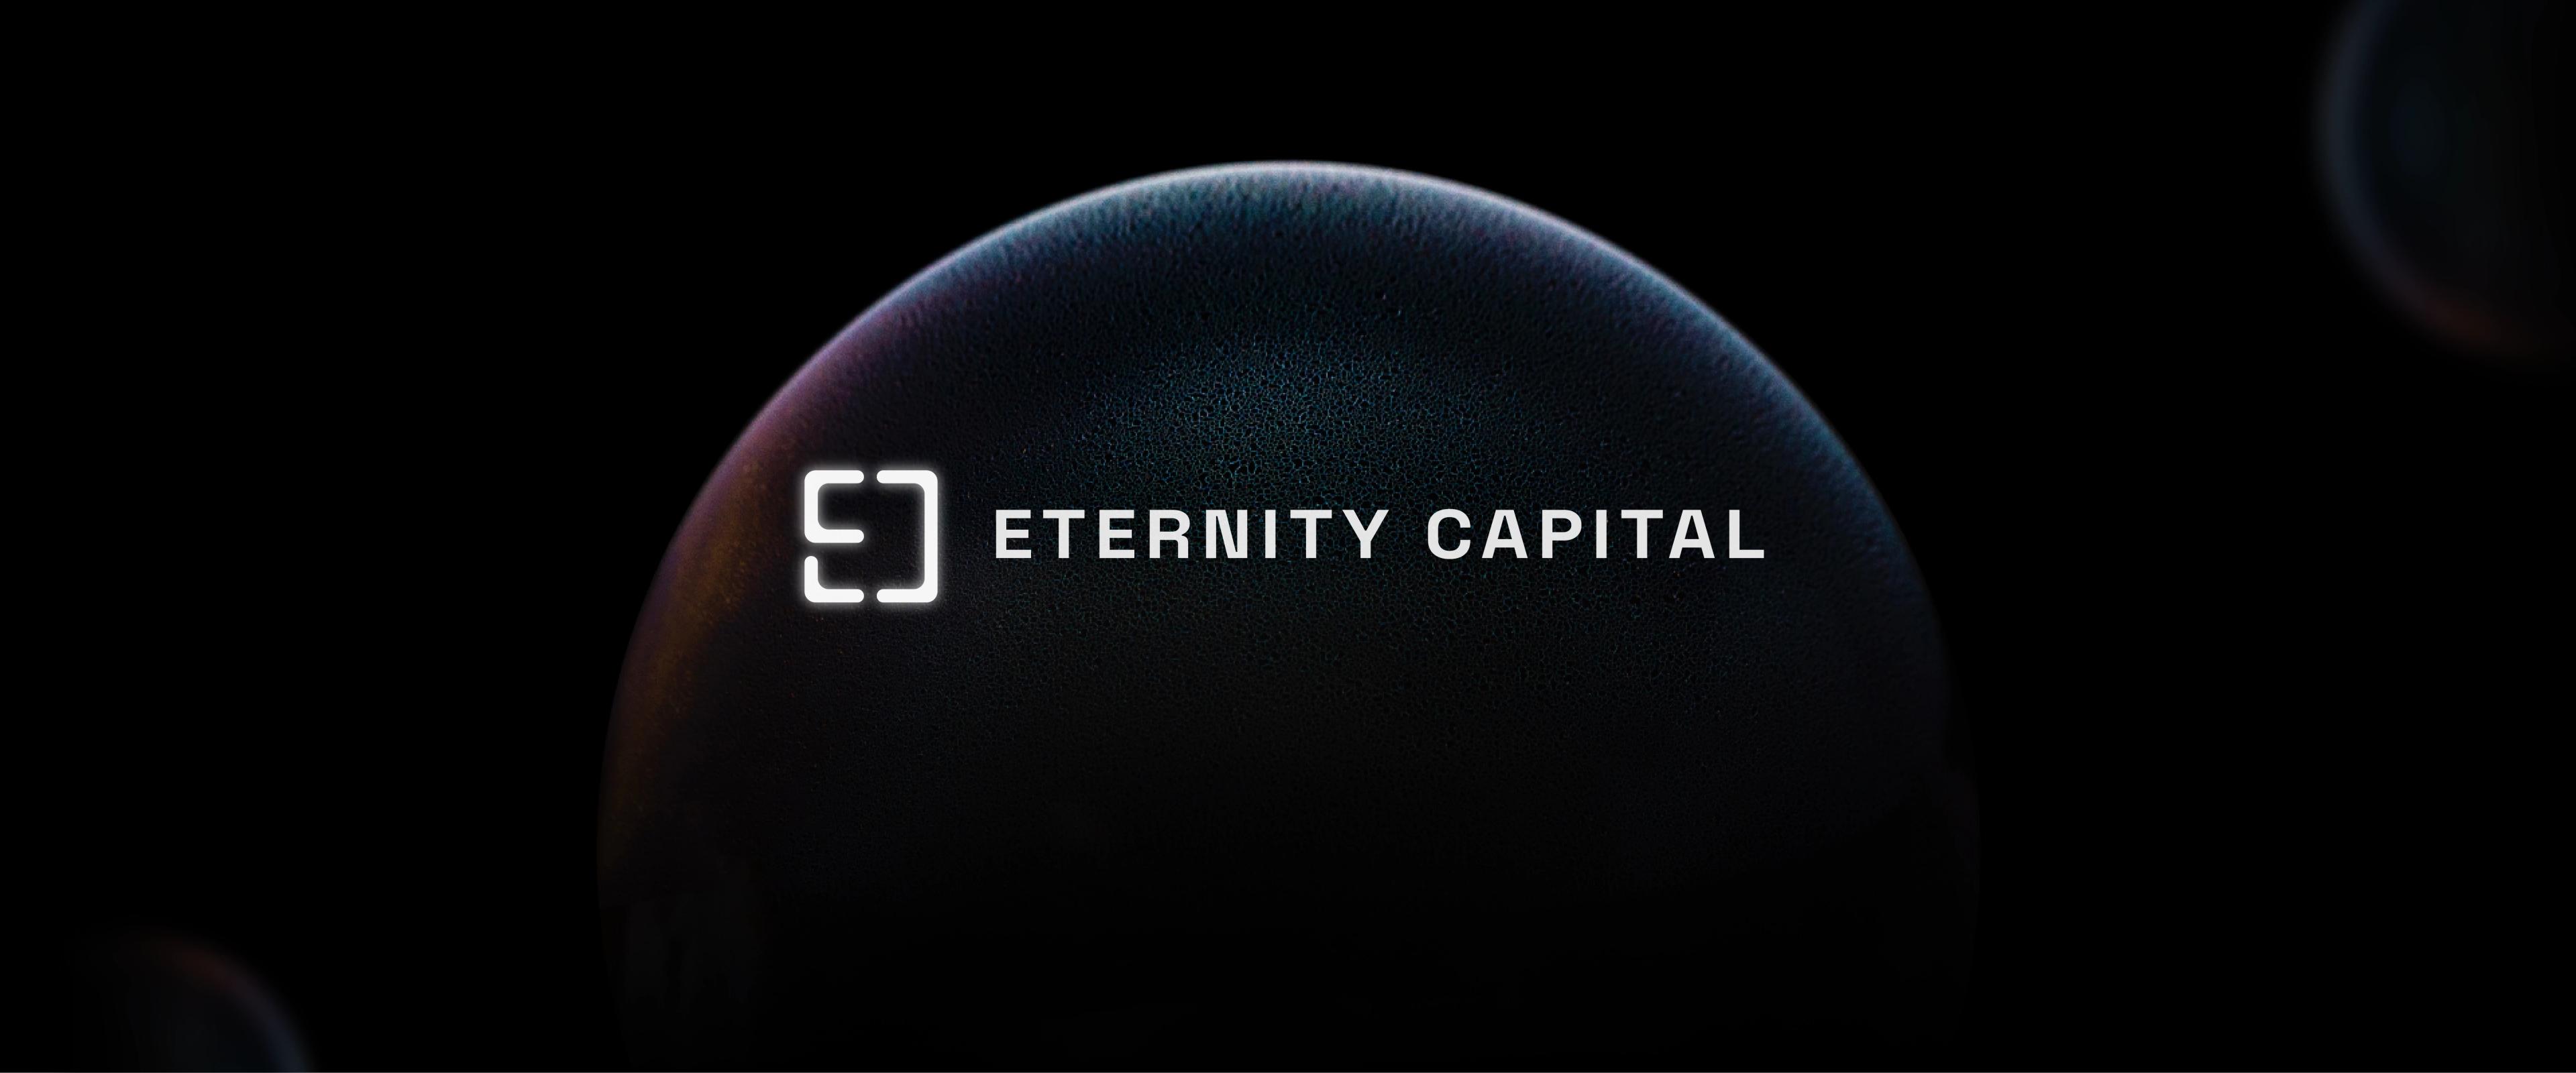 Eternitycap.fund